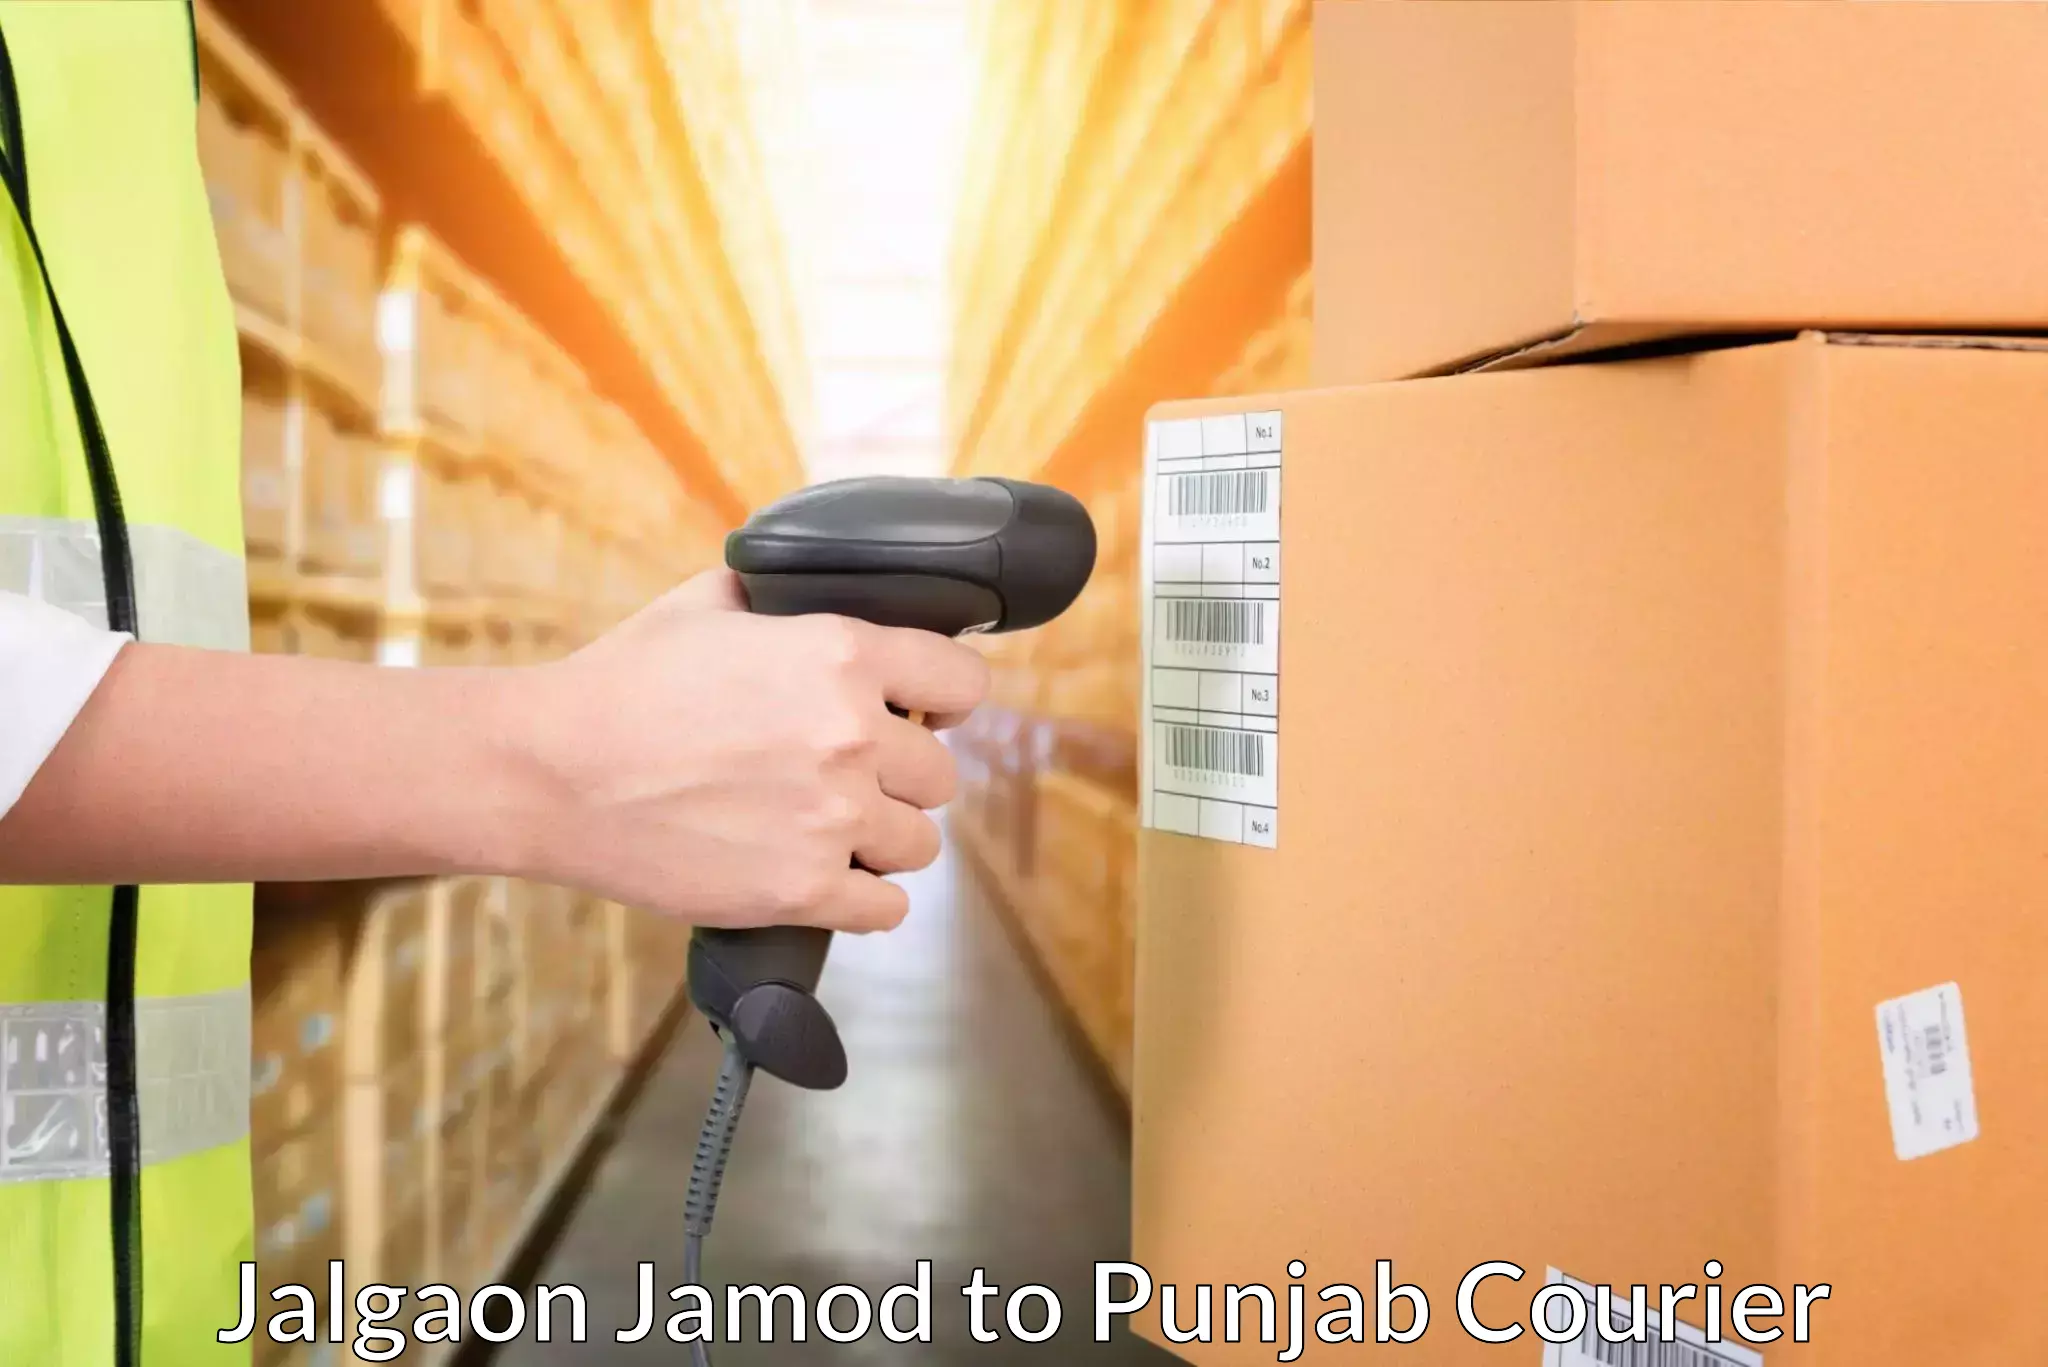 Express logistics in Jalgaon Jamod to Punjab